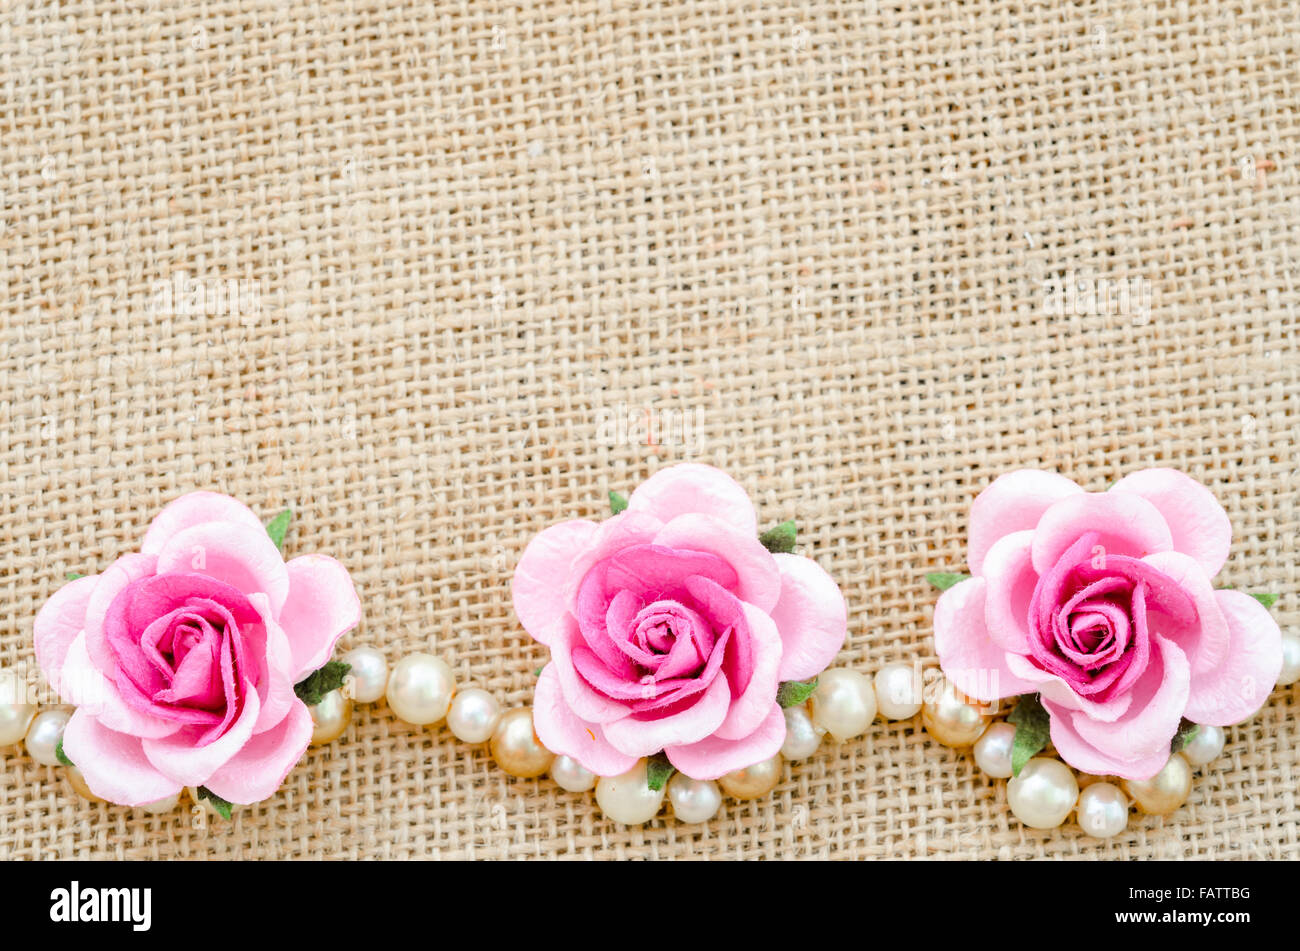 Romantico bellissime rose rosa su sfondi di sacco Foto Stock